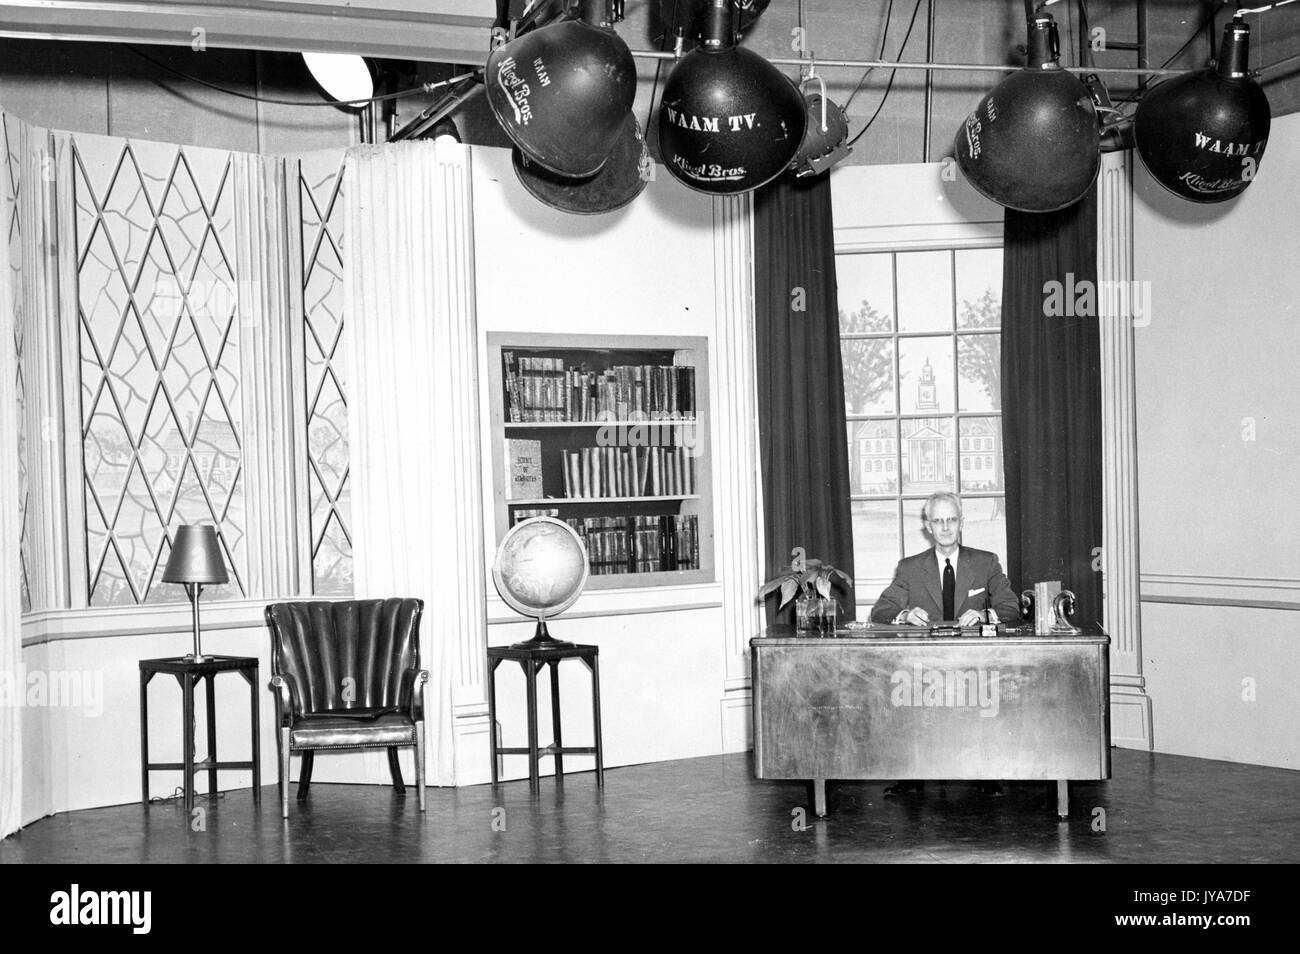 Une vue de l'un des ensembles pour l'émission de télévision The Johns Hopkins science review, hôte Lynn Poole est assis seul à un bureau en face de l'une des deux grandes fenêtres, stage lights accrocher au-dessus de lui, 1955. Banque D'Images